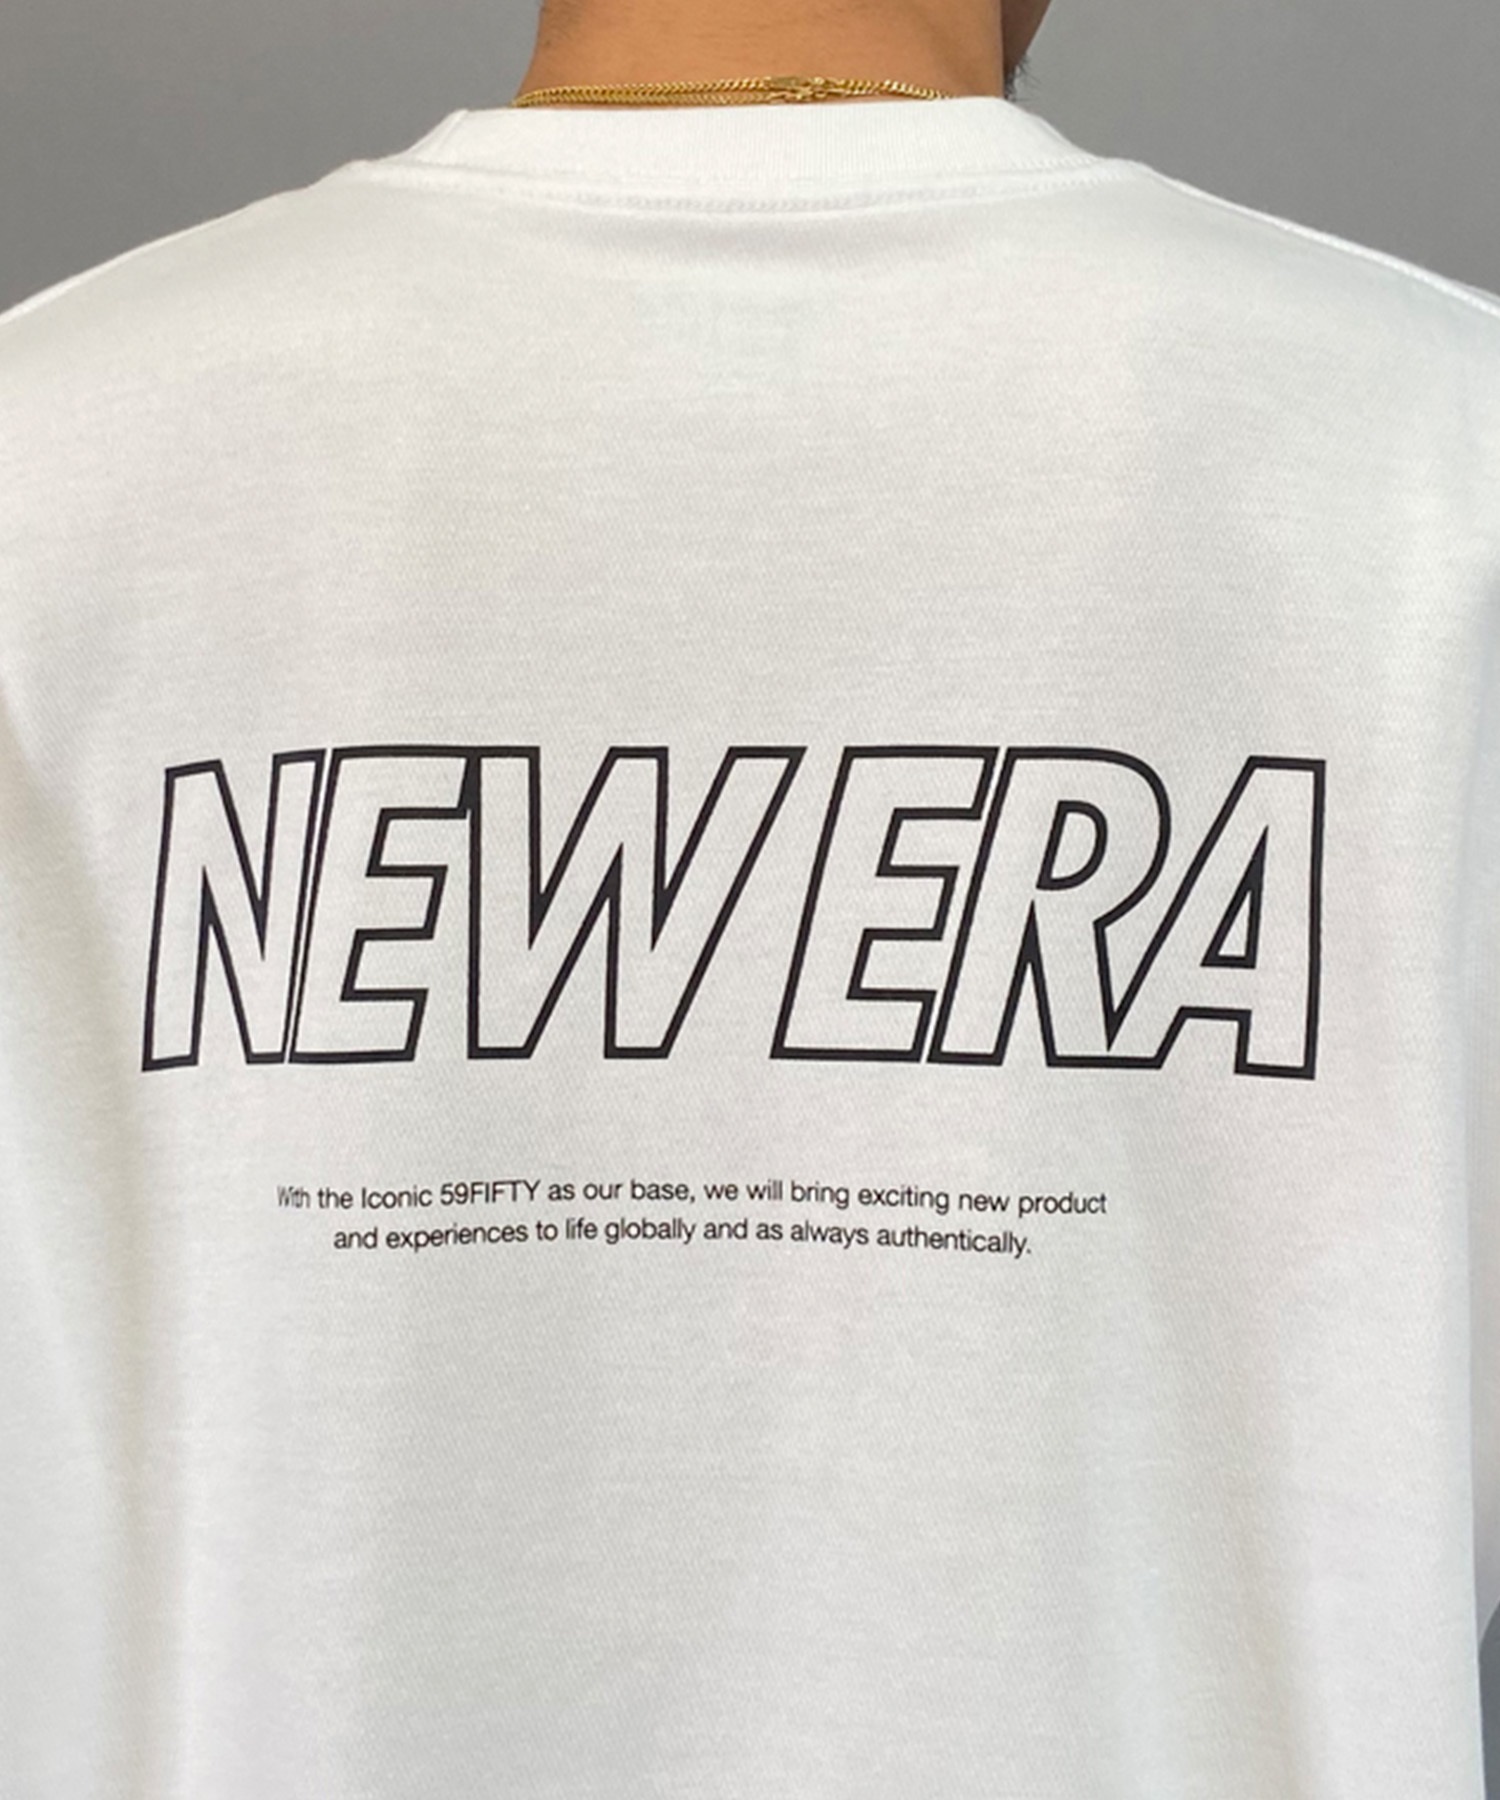 【マトメガイ対象】NEW ERA ニューエラ メンズ Tシャツ 半袖 オーバーサイズ バックプリント 吸汗速乾 シンプル 14306819(WHI-M)